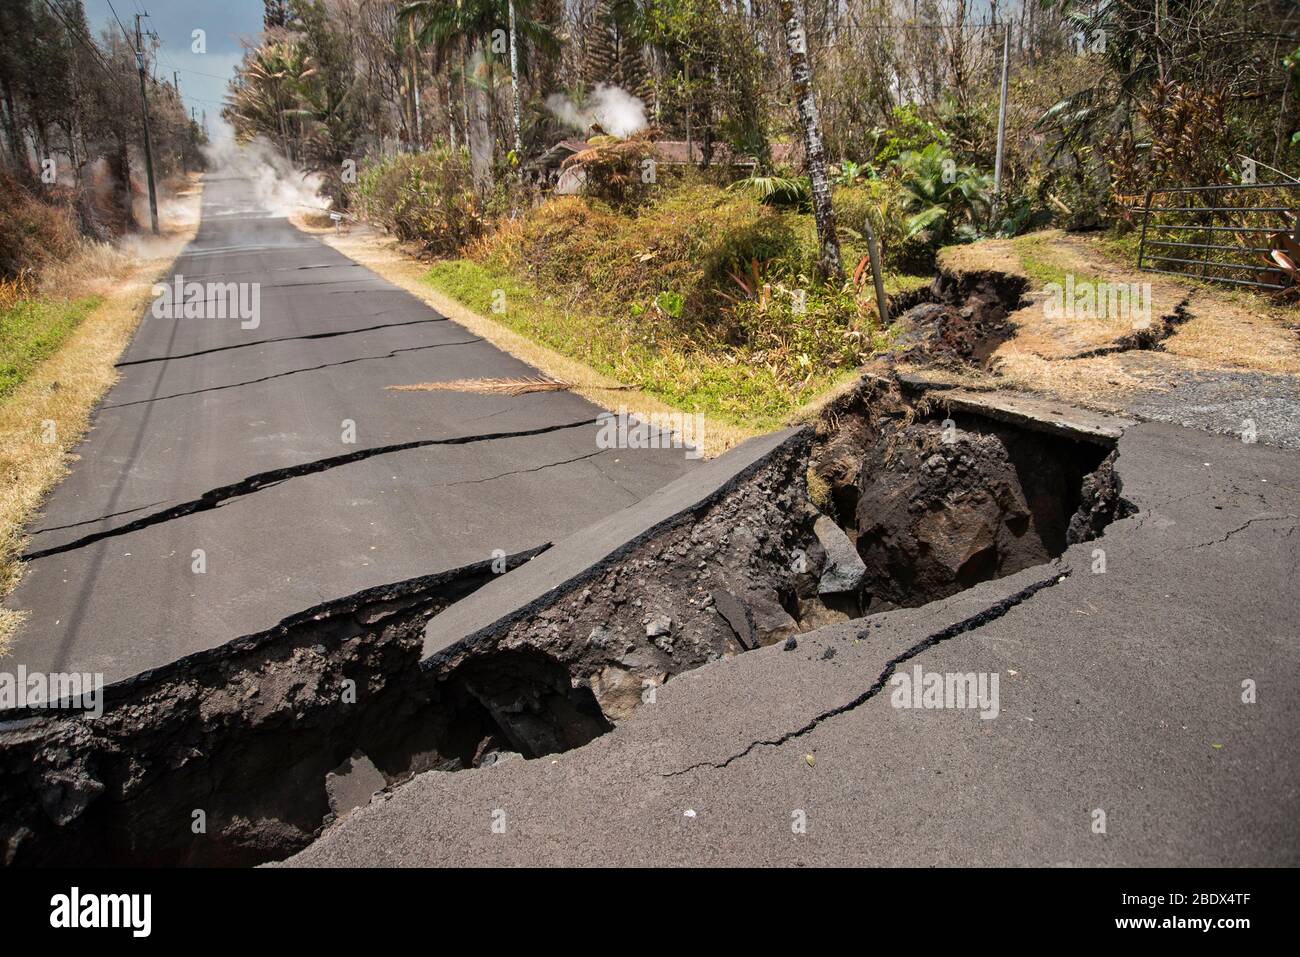 Strada colpita da uno dei numerosi terremoti durante l'eruzione vulcanica di Kīlauea, causando una caduta di 80 metri nel terreno. Si notano i gas che emanano dalle fessure dell'asfalto, più in basso lungo la strada. Immagine scattata il 19 maggio 2018. Foto Stock